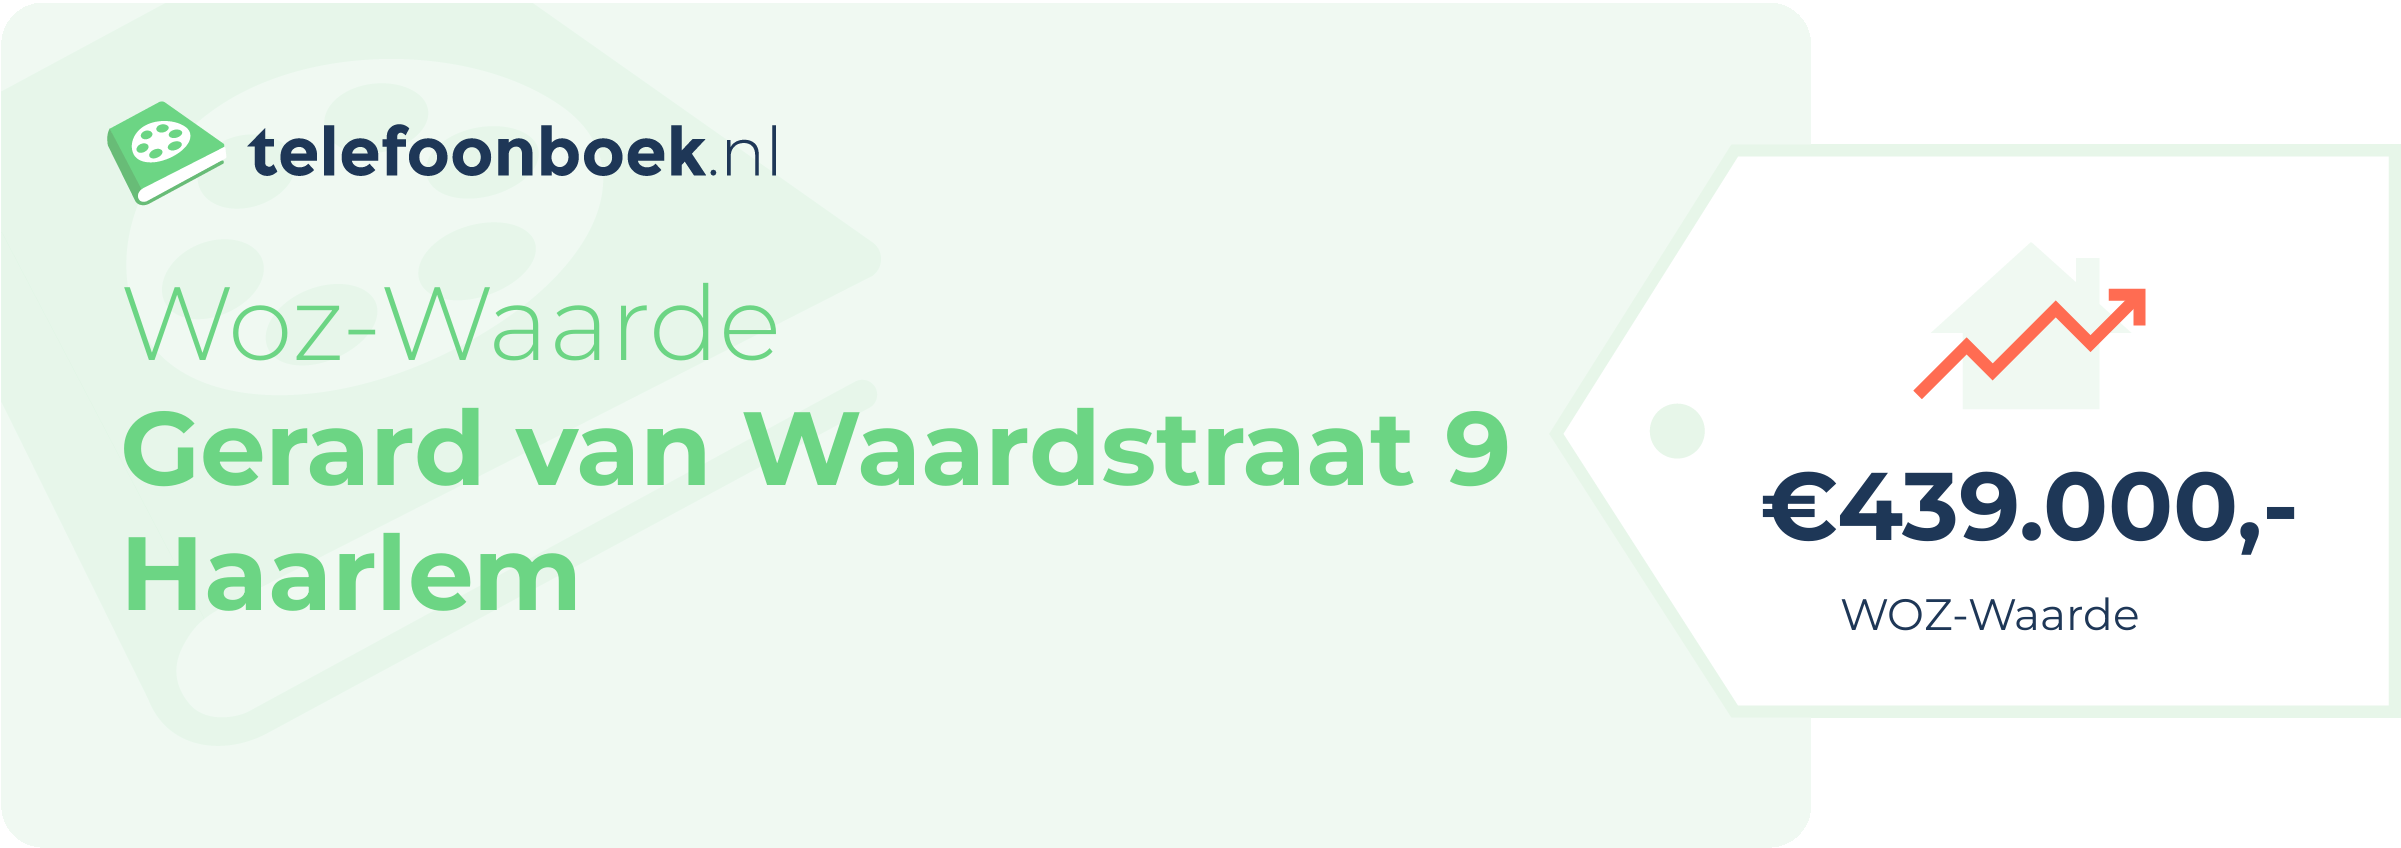 WOZ-waarde Gerard Van Waardstraat 9 Haarlem